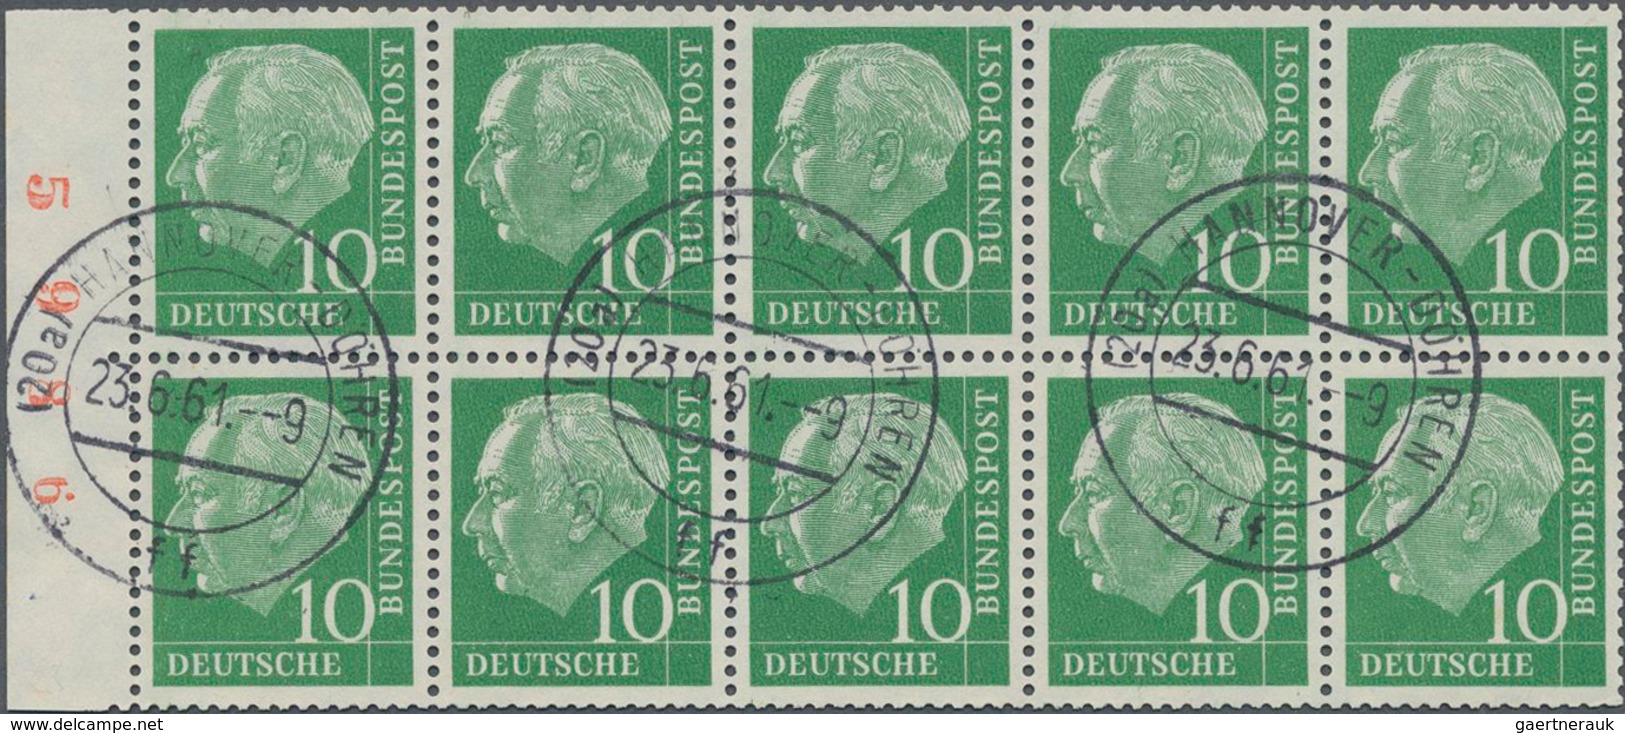 Bundesrepublik - Zusammendrucke: 1960, 10 Pfg. Heuss Heftchenblatt Mit Roter Bogenlaufnummer, Gestem - Se-Tenant